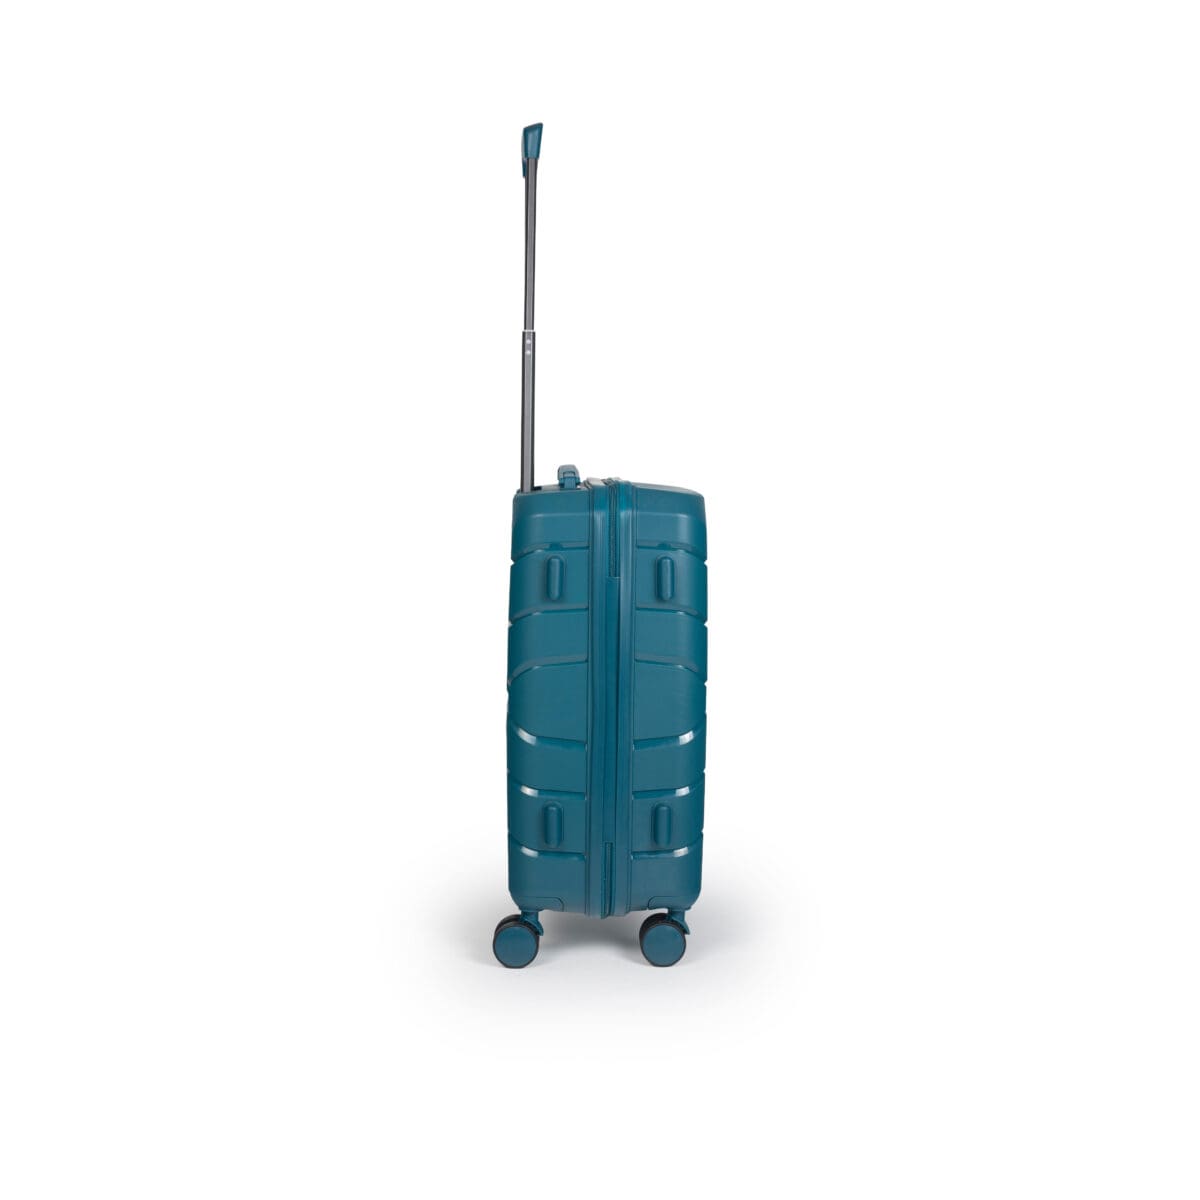 Βαλίτσα χειραποσκευή με tsa lock διπλά ροδάκια από πολυπροπυλένιο άθραυστο υλικό σε πετρόλ χρώμα